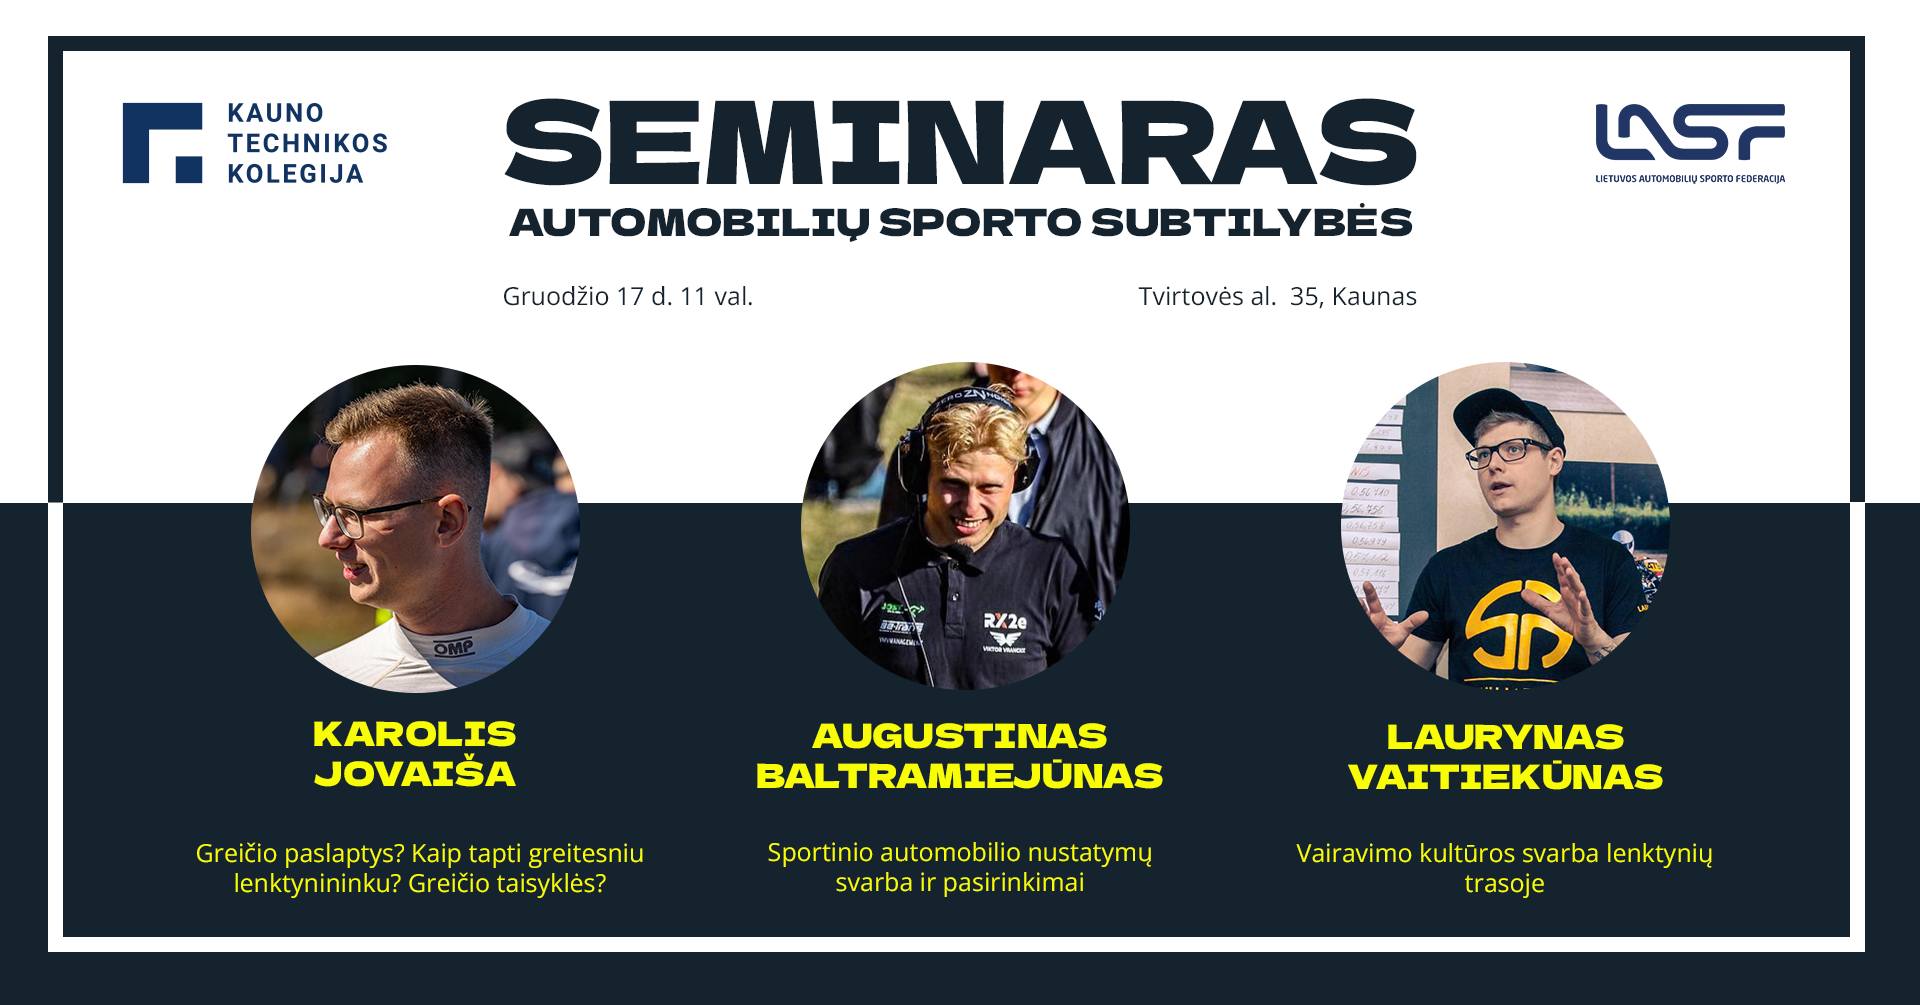 Seminaras: Automobilių sporto subtilybės